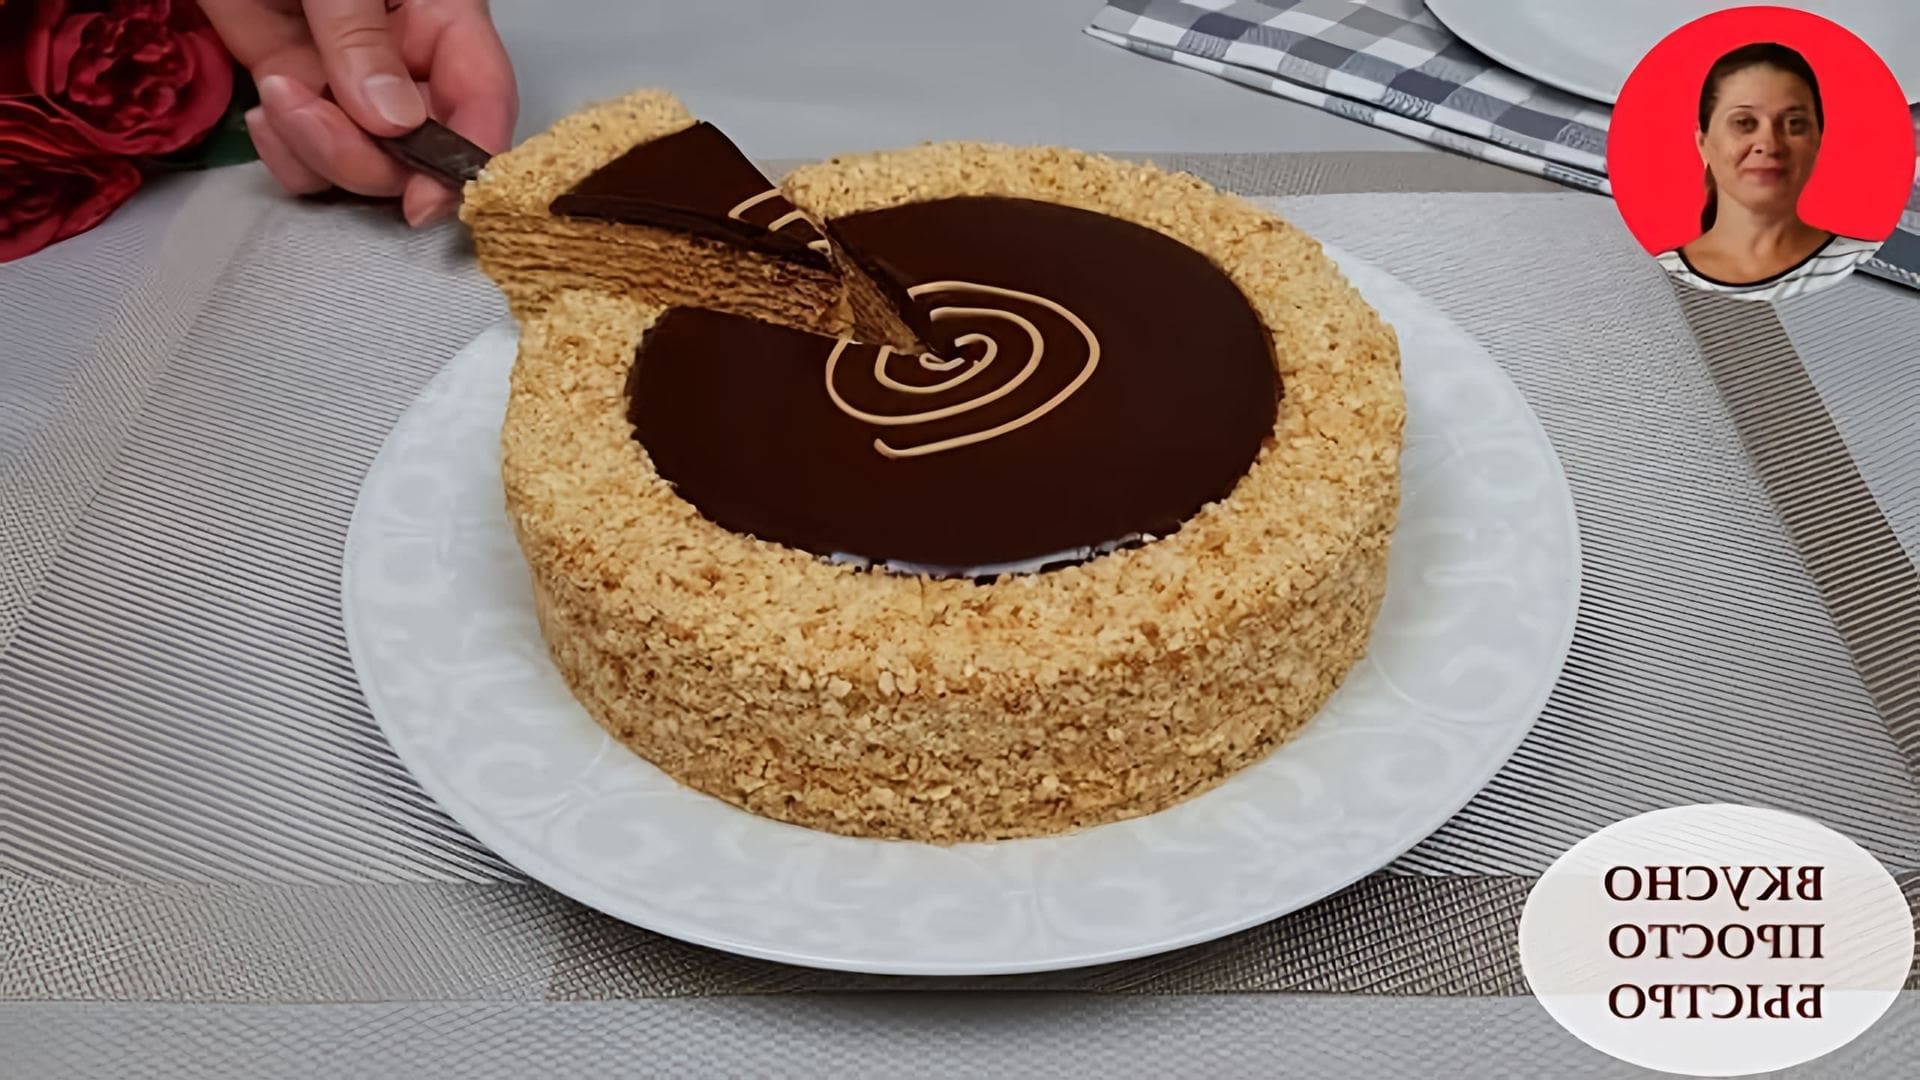 В этом видео Наталия показывает, как приготовить торт "Золотой ключик" с вафельными коржами, варёным сгущённым молоком и орехами